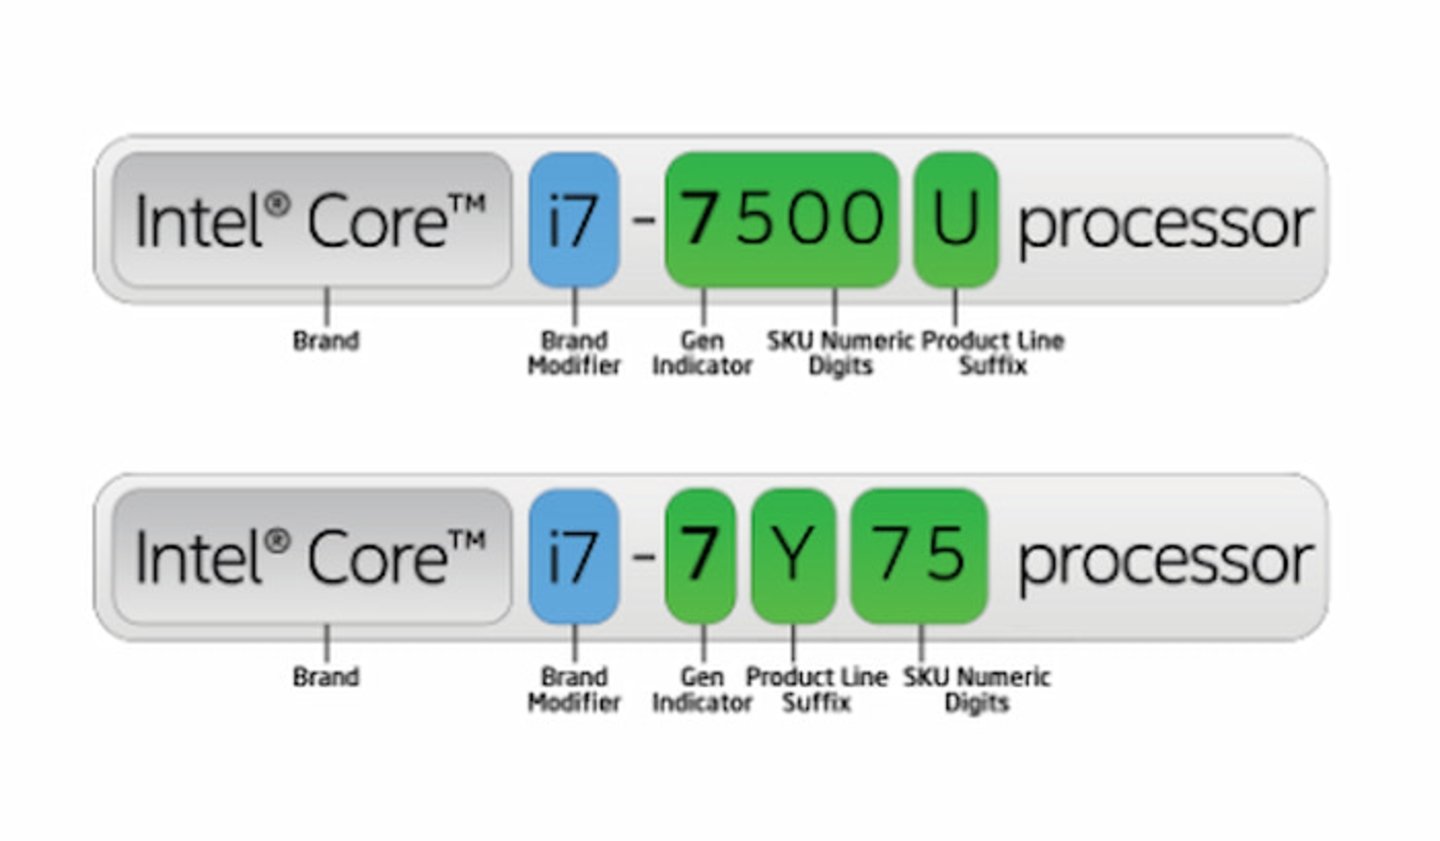 La nomenclatura de los procesadores de Intel no son letras y números al azar, sino que revelan detalles del modelo